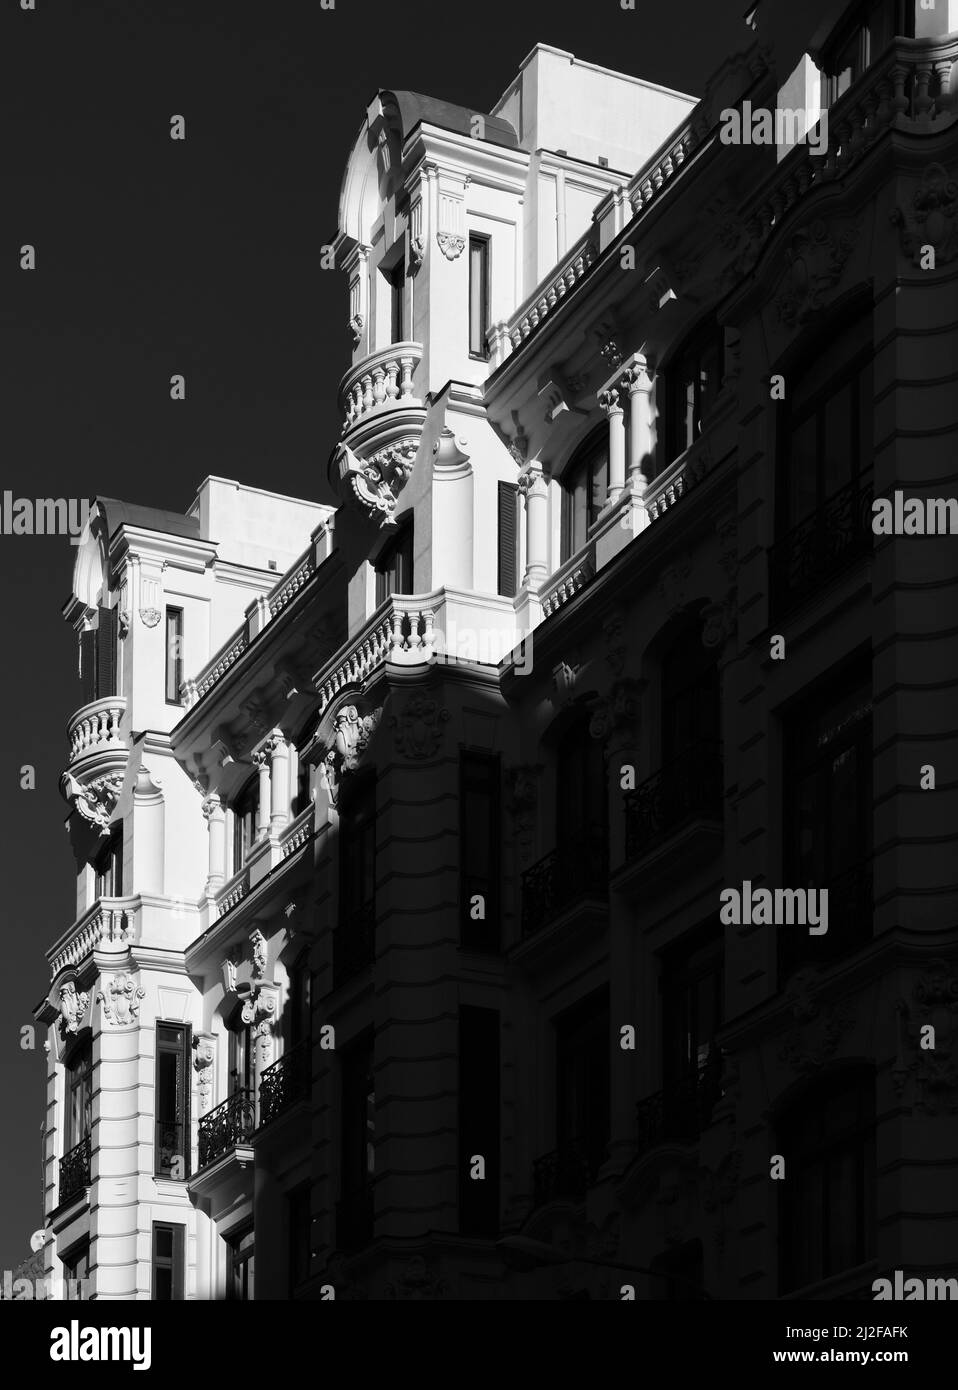 Image en noir et blanc à contraste élevé d'une belle maison de ville. Banque D'Images